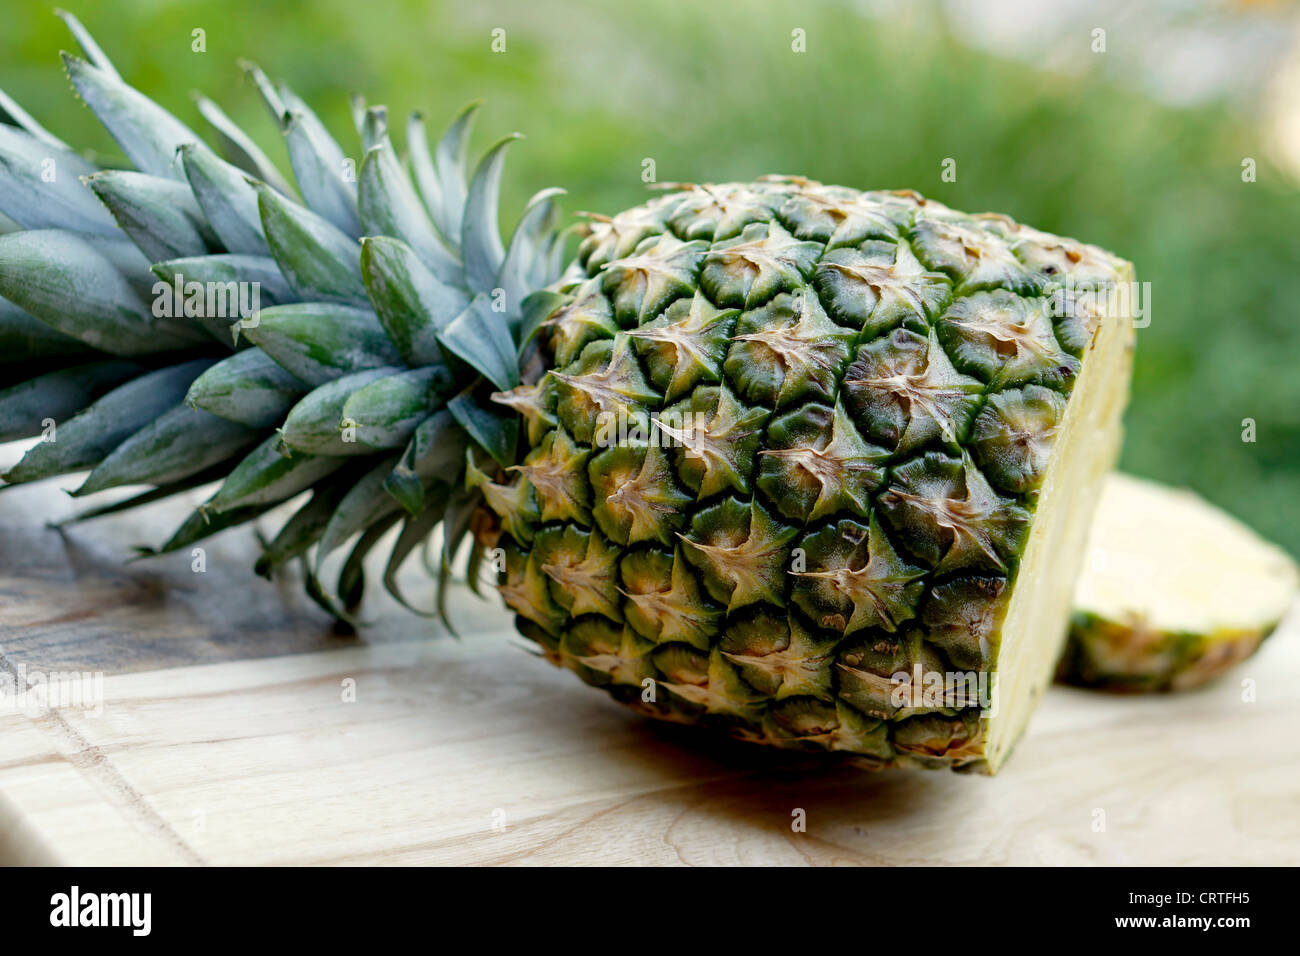 Cortar en rodajas de piña, Ananas Foto de stock